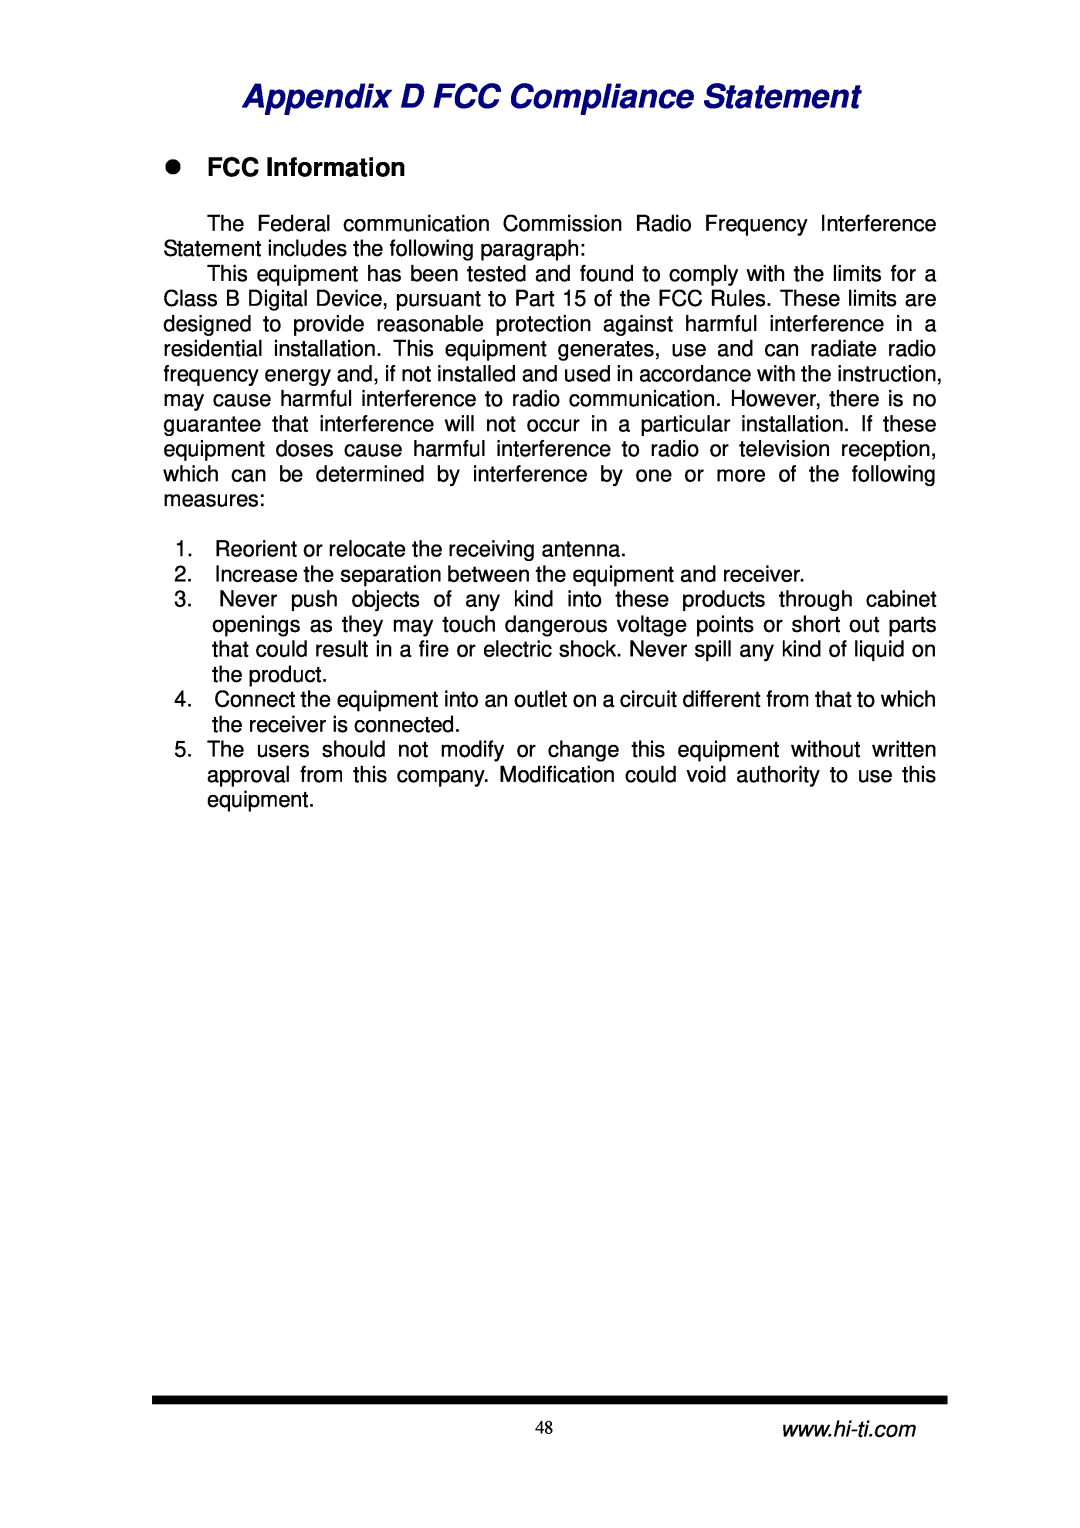 Hi-Touch Imaging Technologies CS-300 user manual Appendix D FCC Compliance Statement, FCC Information 